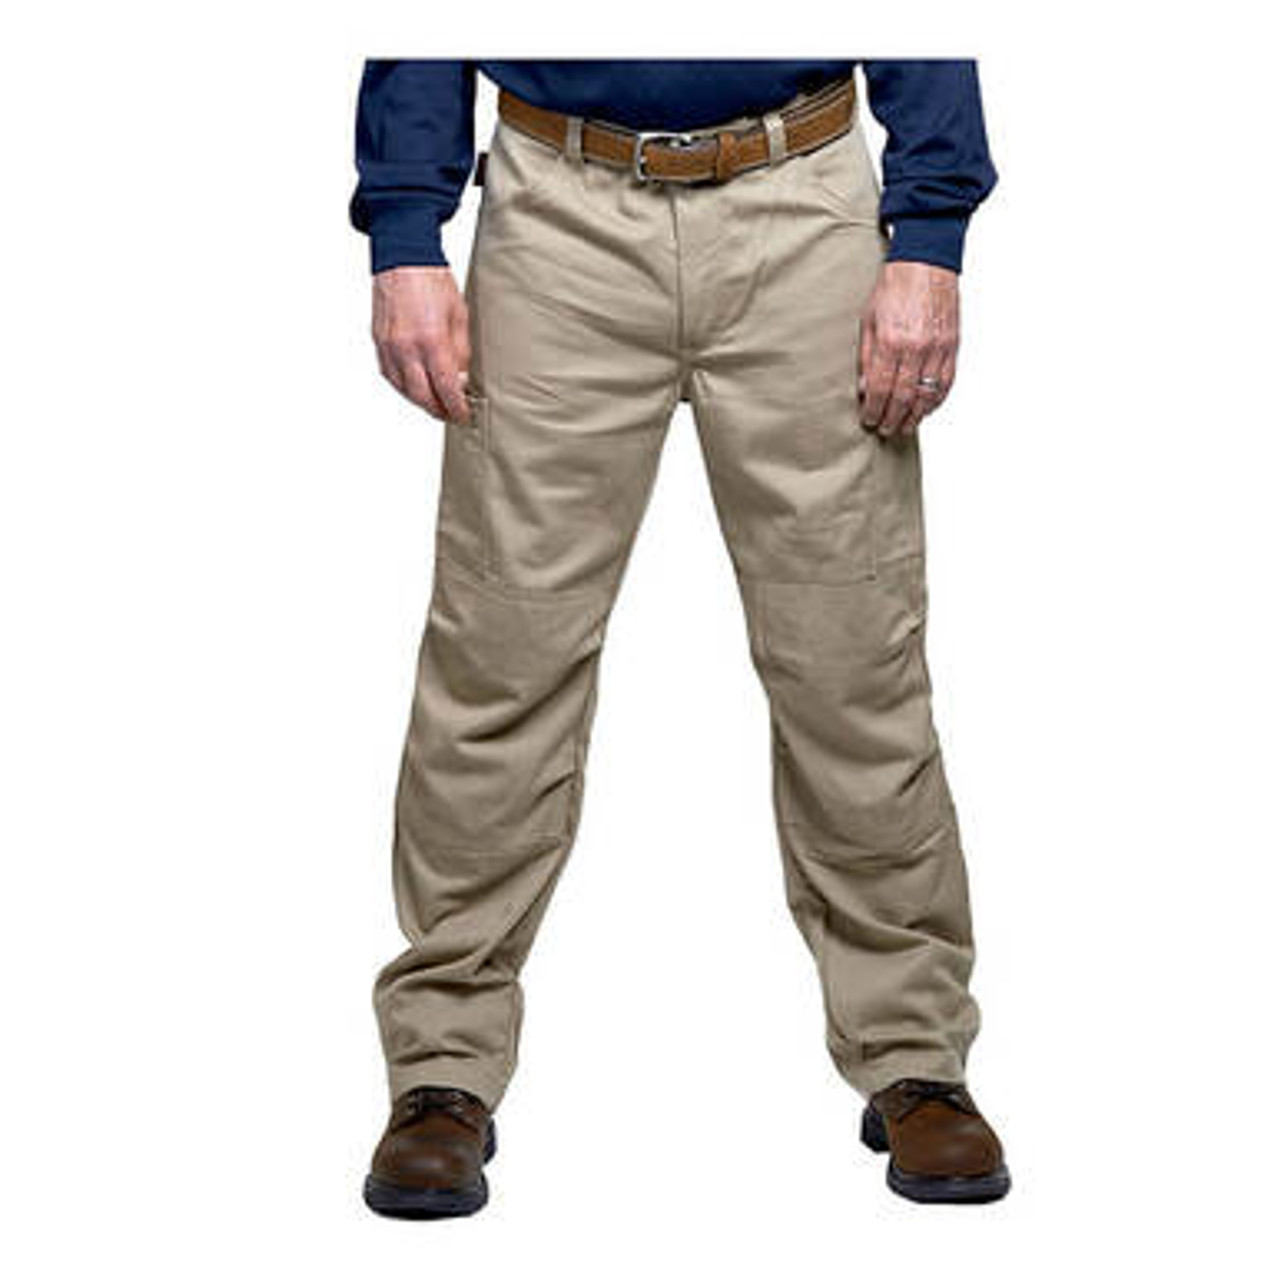 Rasco FR Denim Carpenter Pants | Safety Workwear